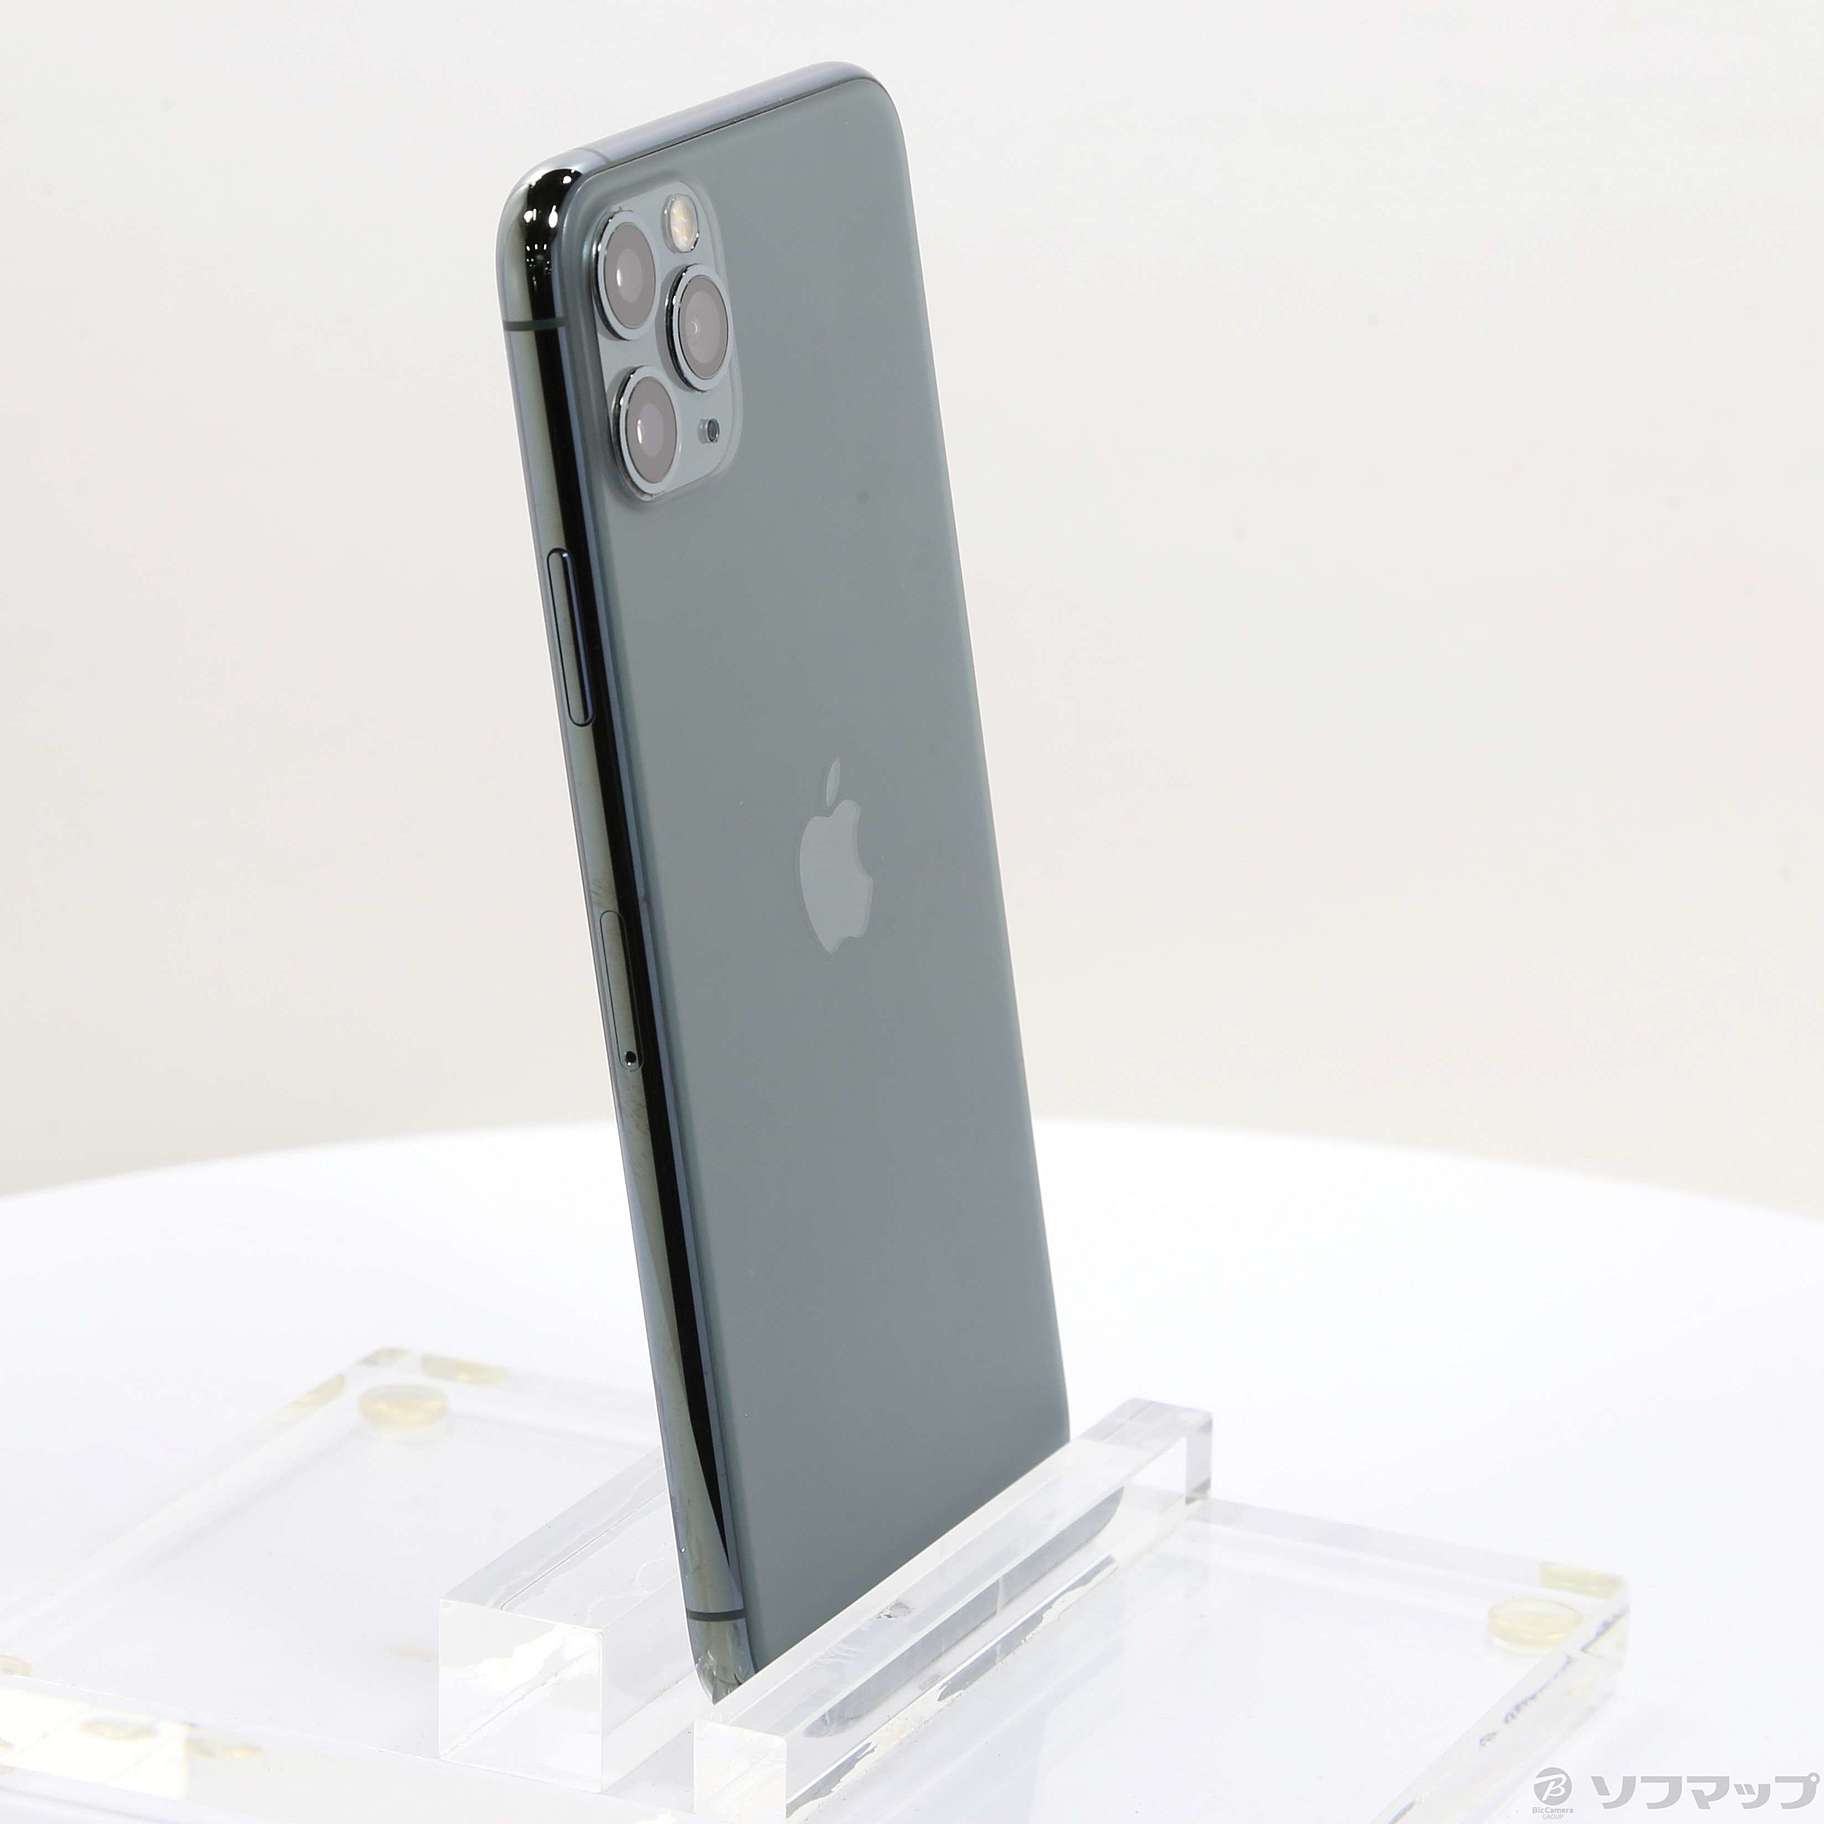 iPhone 11 Pro Dual-SIM 512GB ミッドナイトグリーン